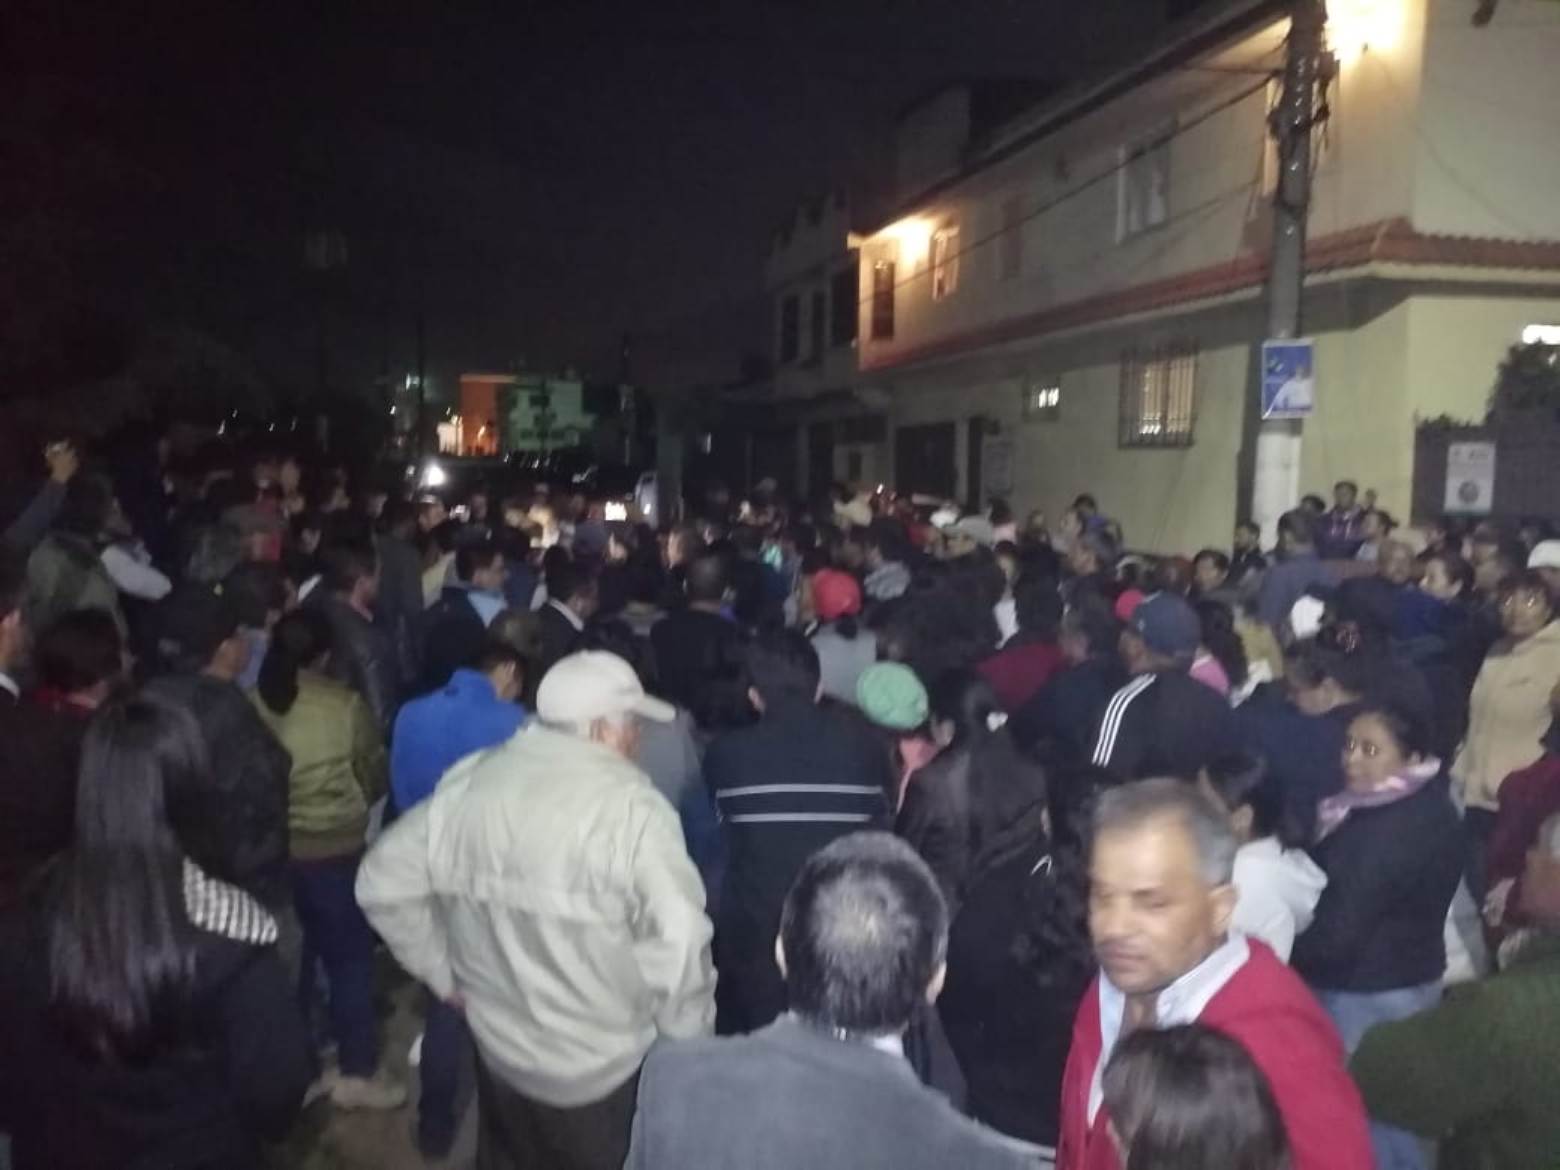 Cientos de vecinos se reunieron para exigir al alcalde que se concluya con el recapeo. (Fotos Prensa Libre: María Longo) 